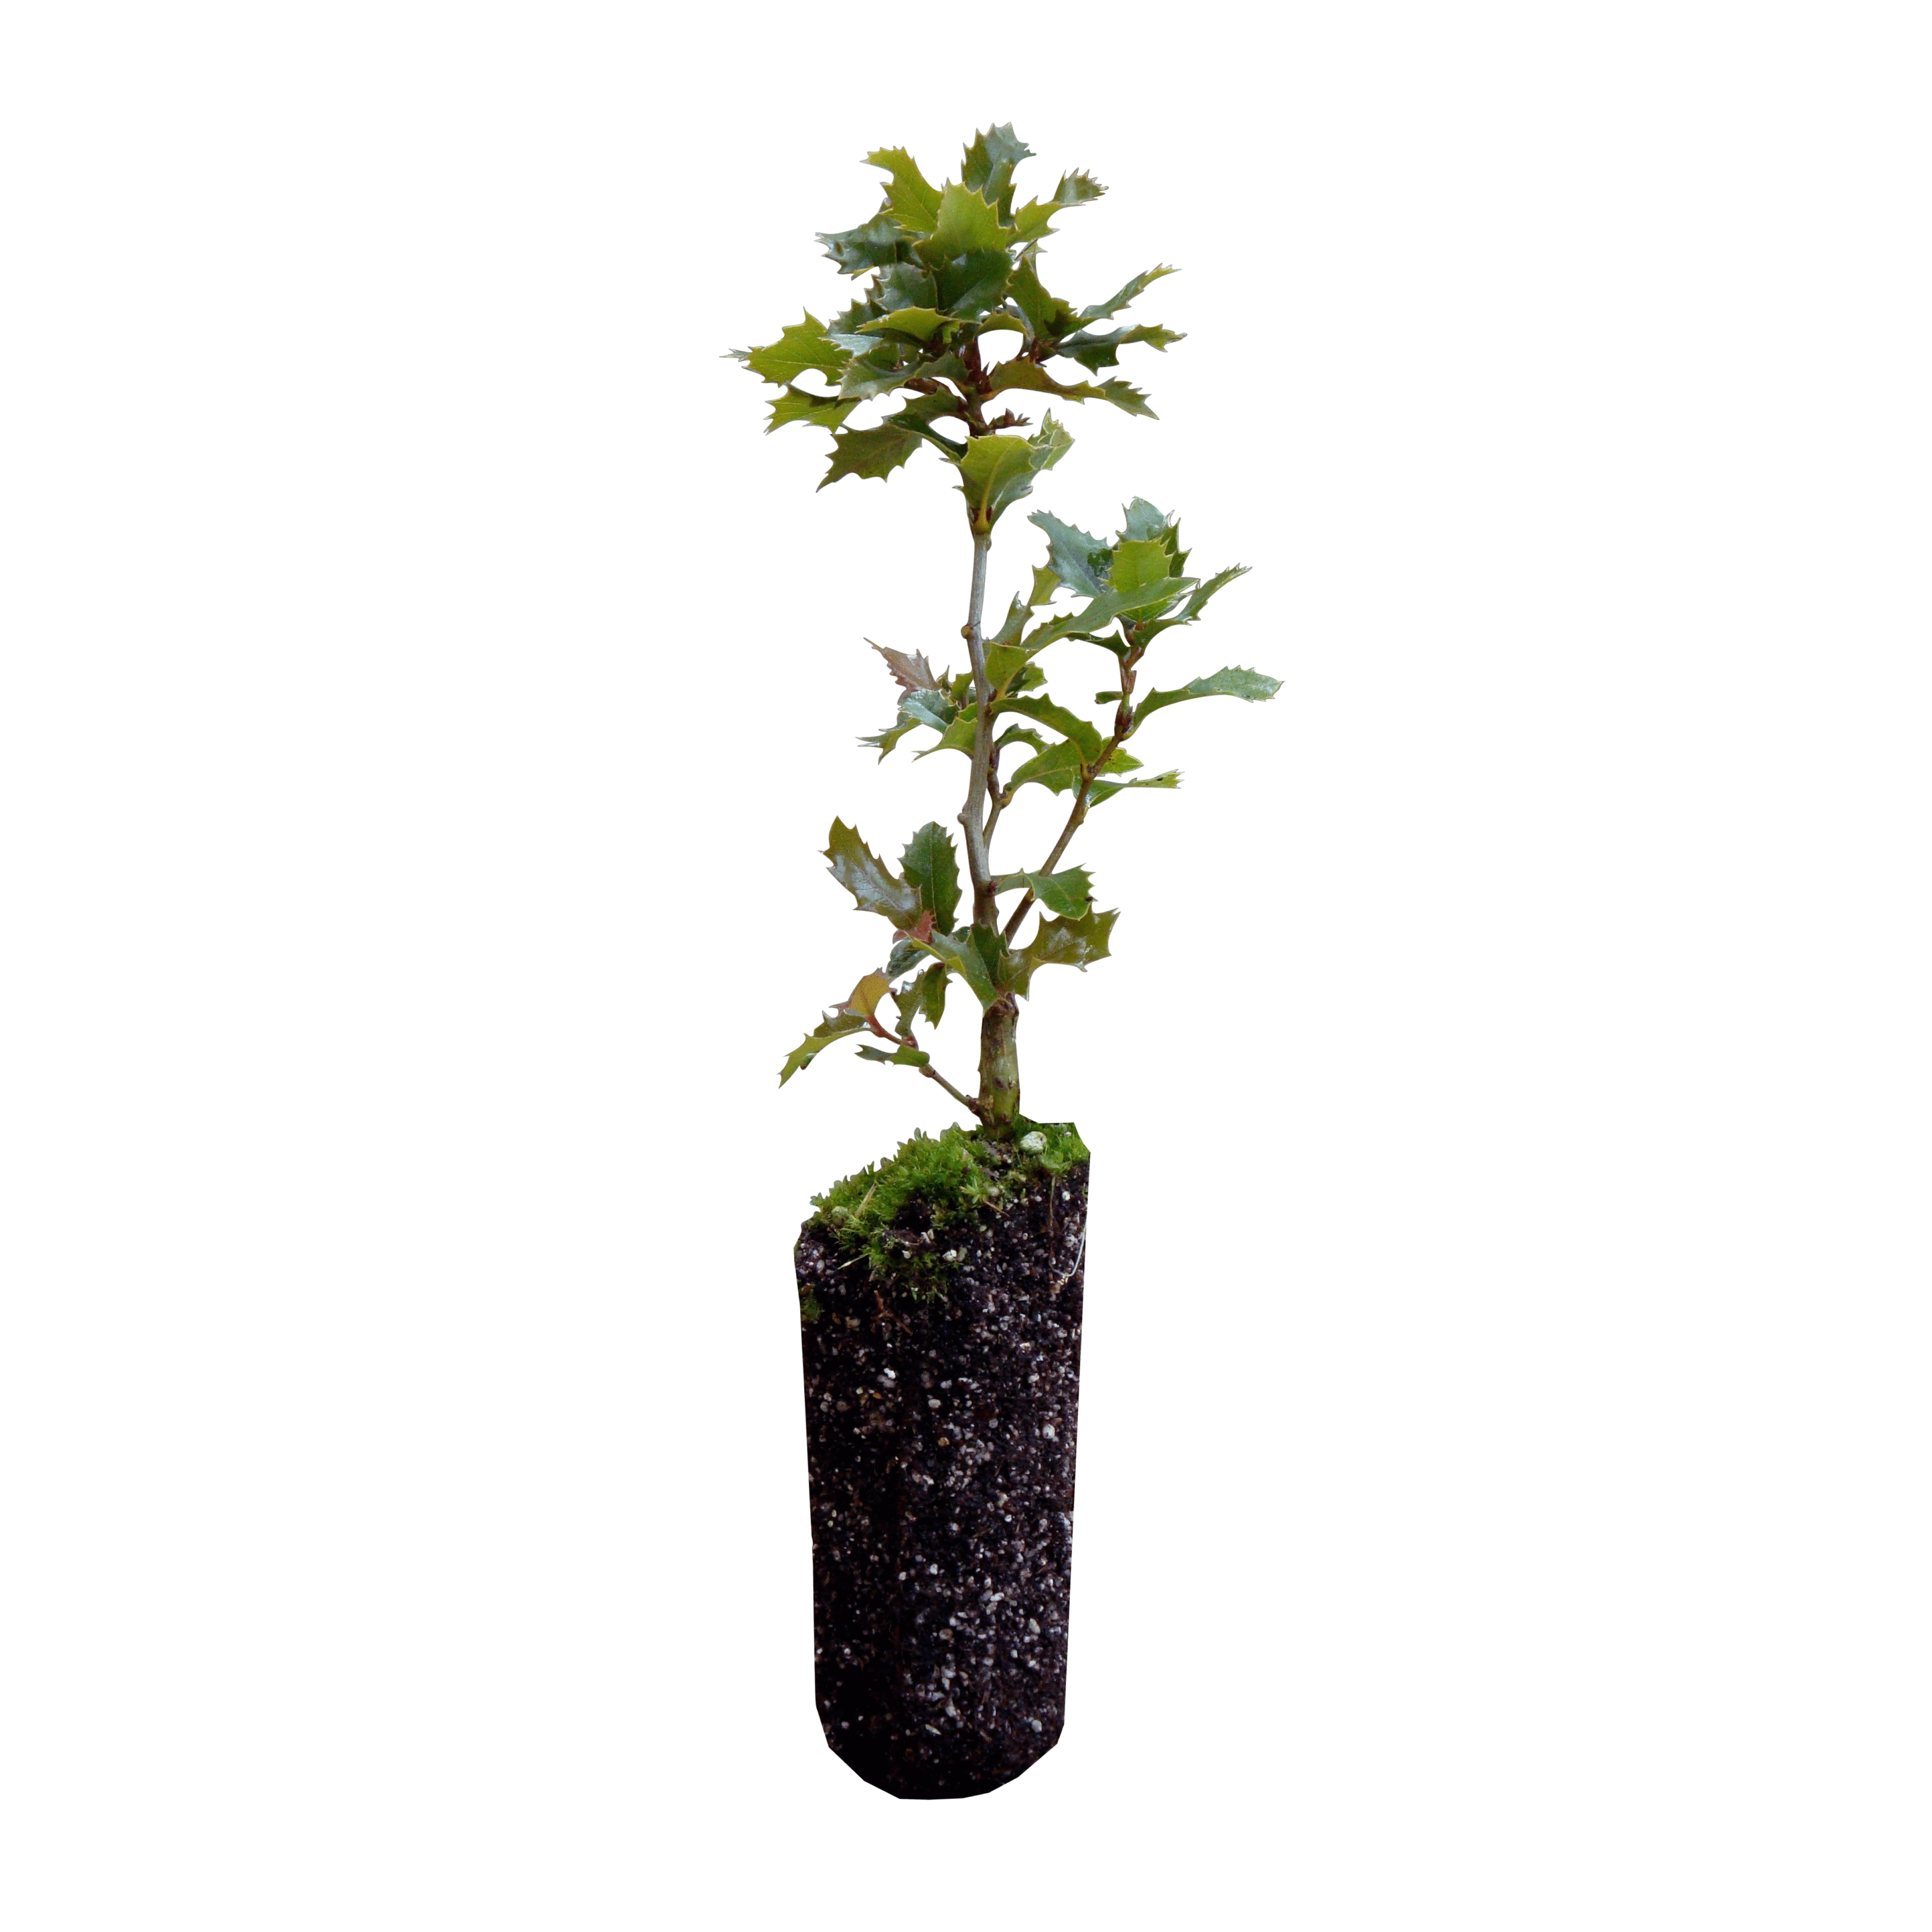 California Coast Live Oak Seedling for bonsai planting gardening starter per 5 